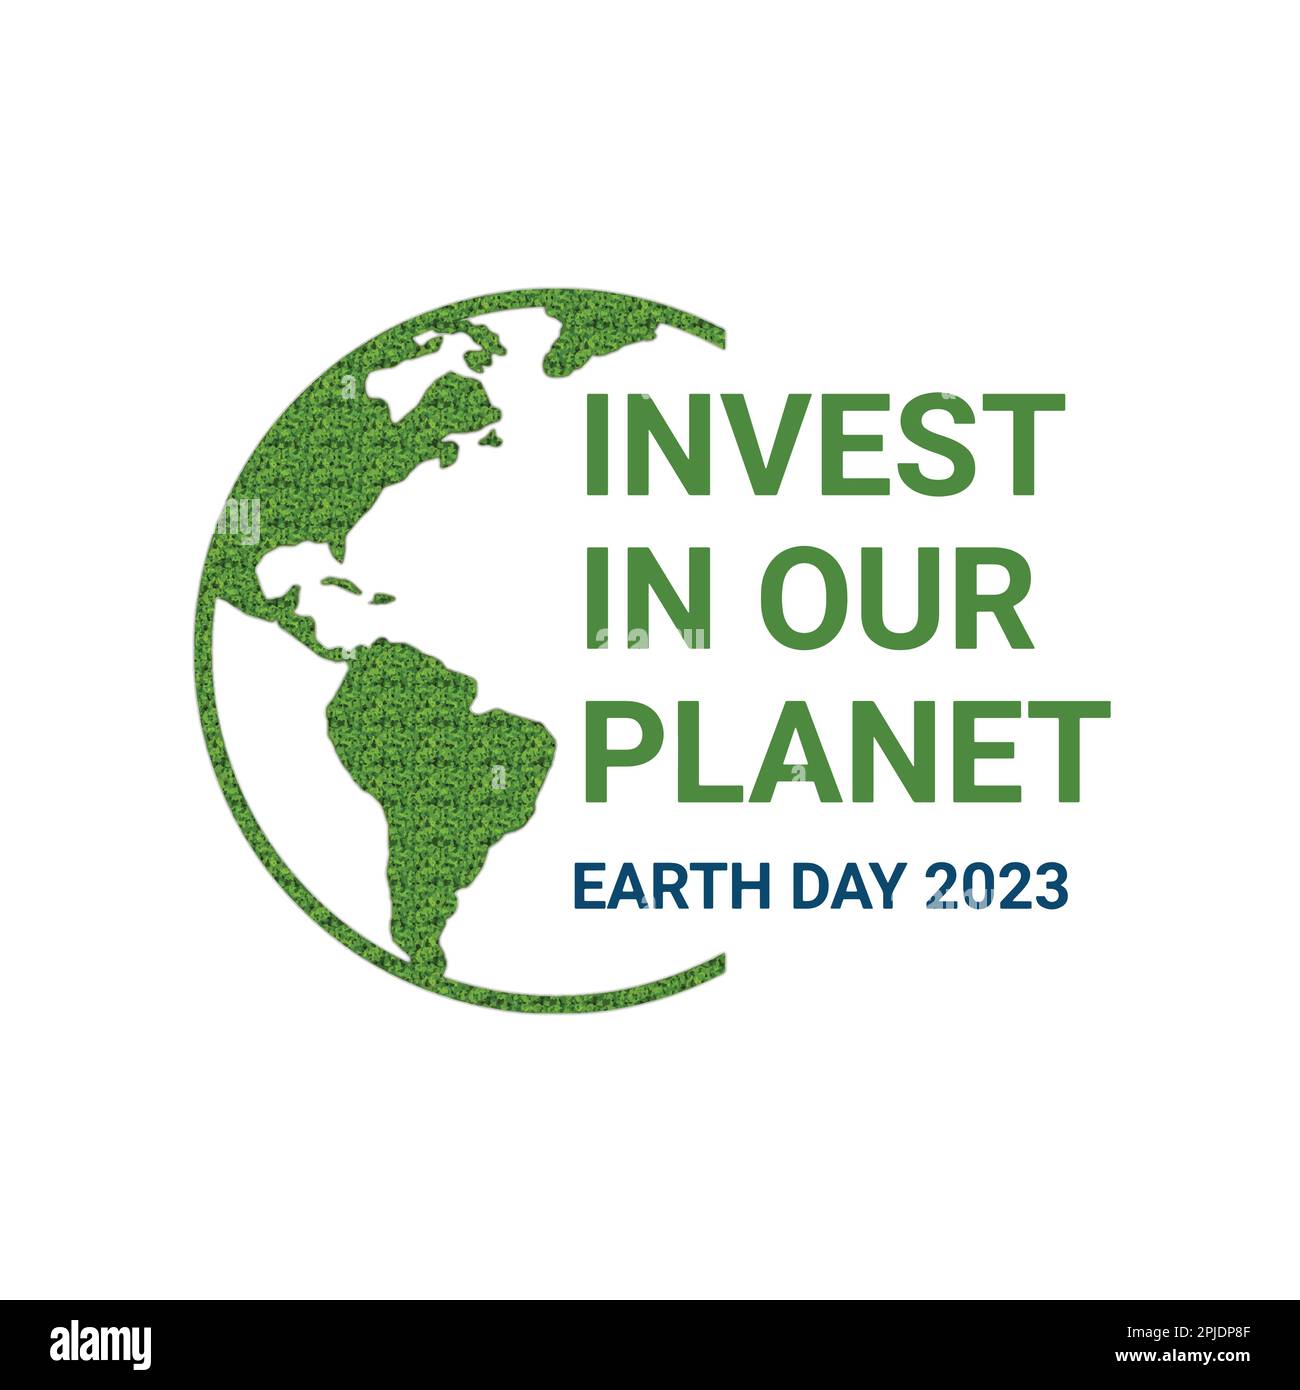 Investir dans notre planète. Arrière-plan du concept d'illustration du jour de la Terre 2023. Concept d'écologie. Conception avec dessin de carte de globe et herbe verte isolée sur blanc Illustration de Vecteur